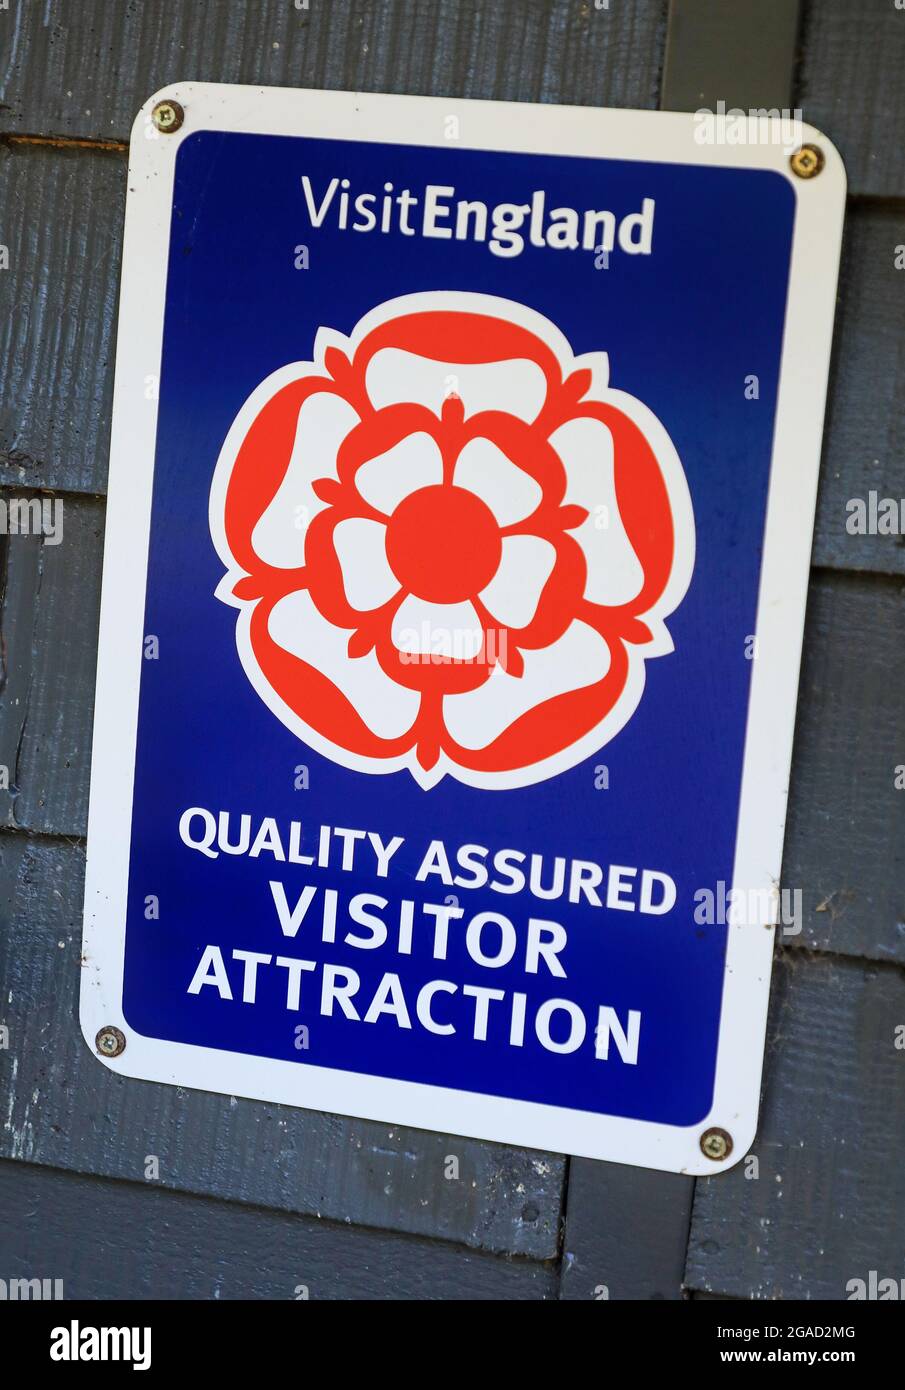 Cartello per "Visit England", "Quality Assured Visitor Attraction", Inghilterra, Regno Unito Foto Stock